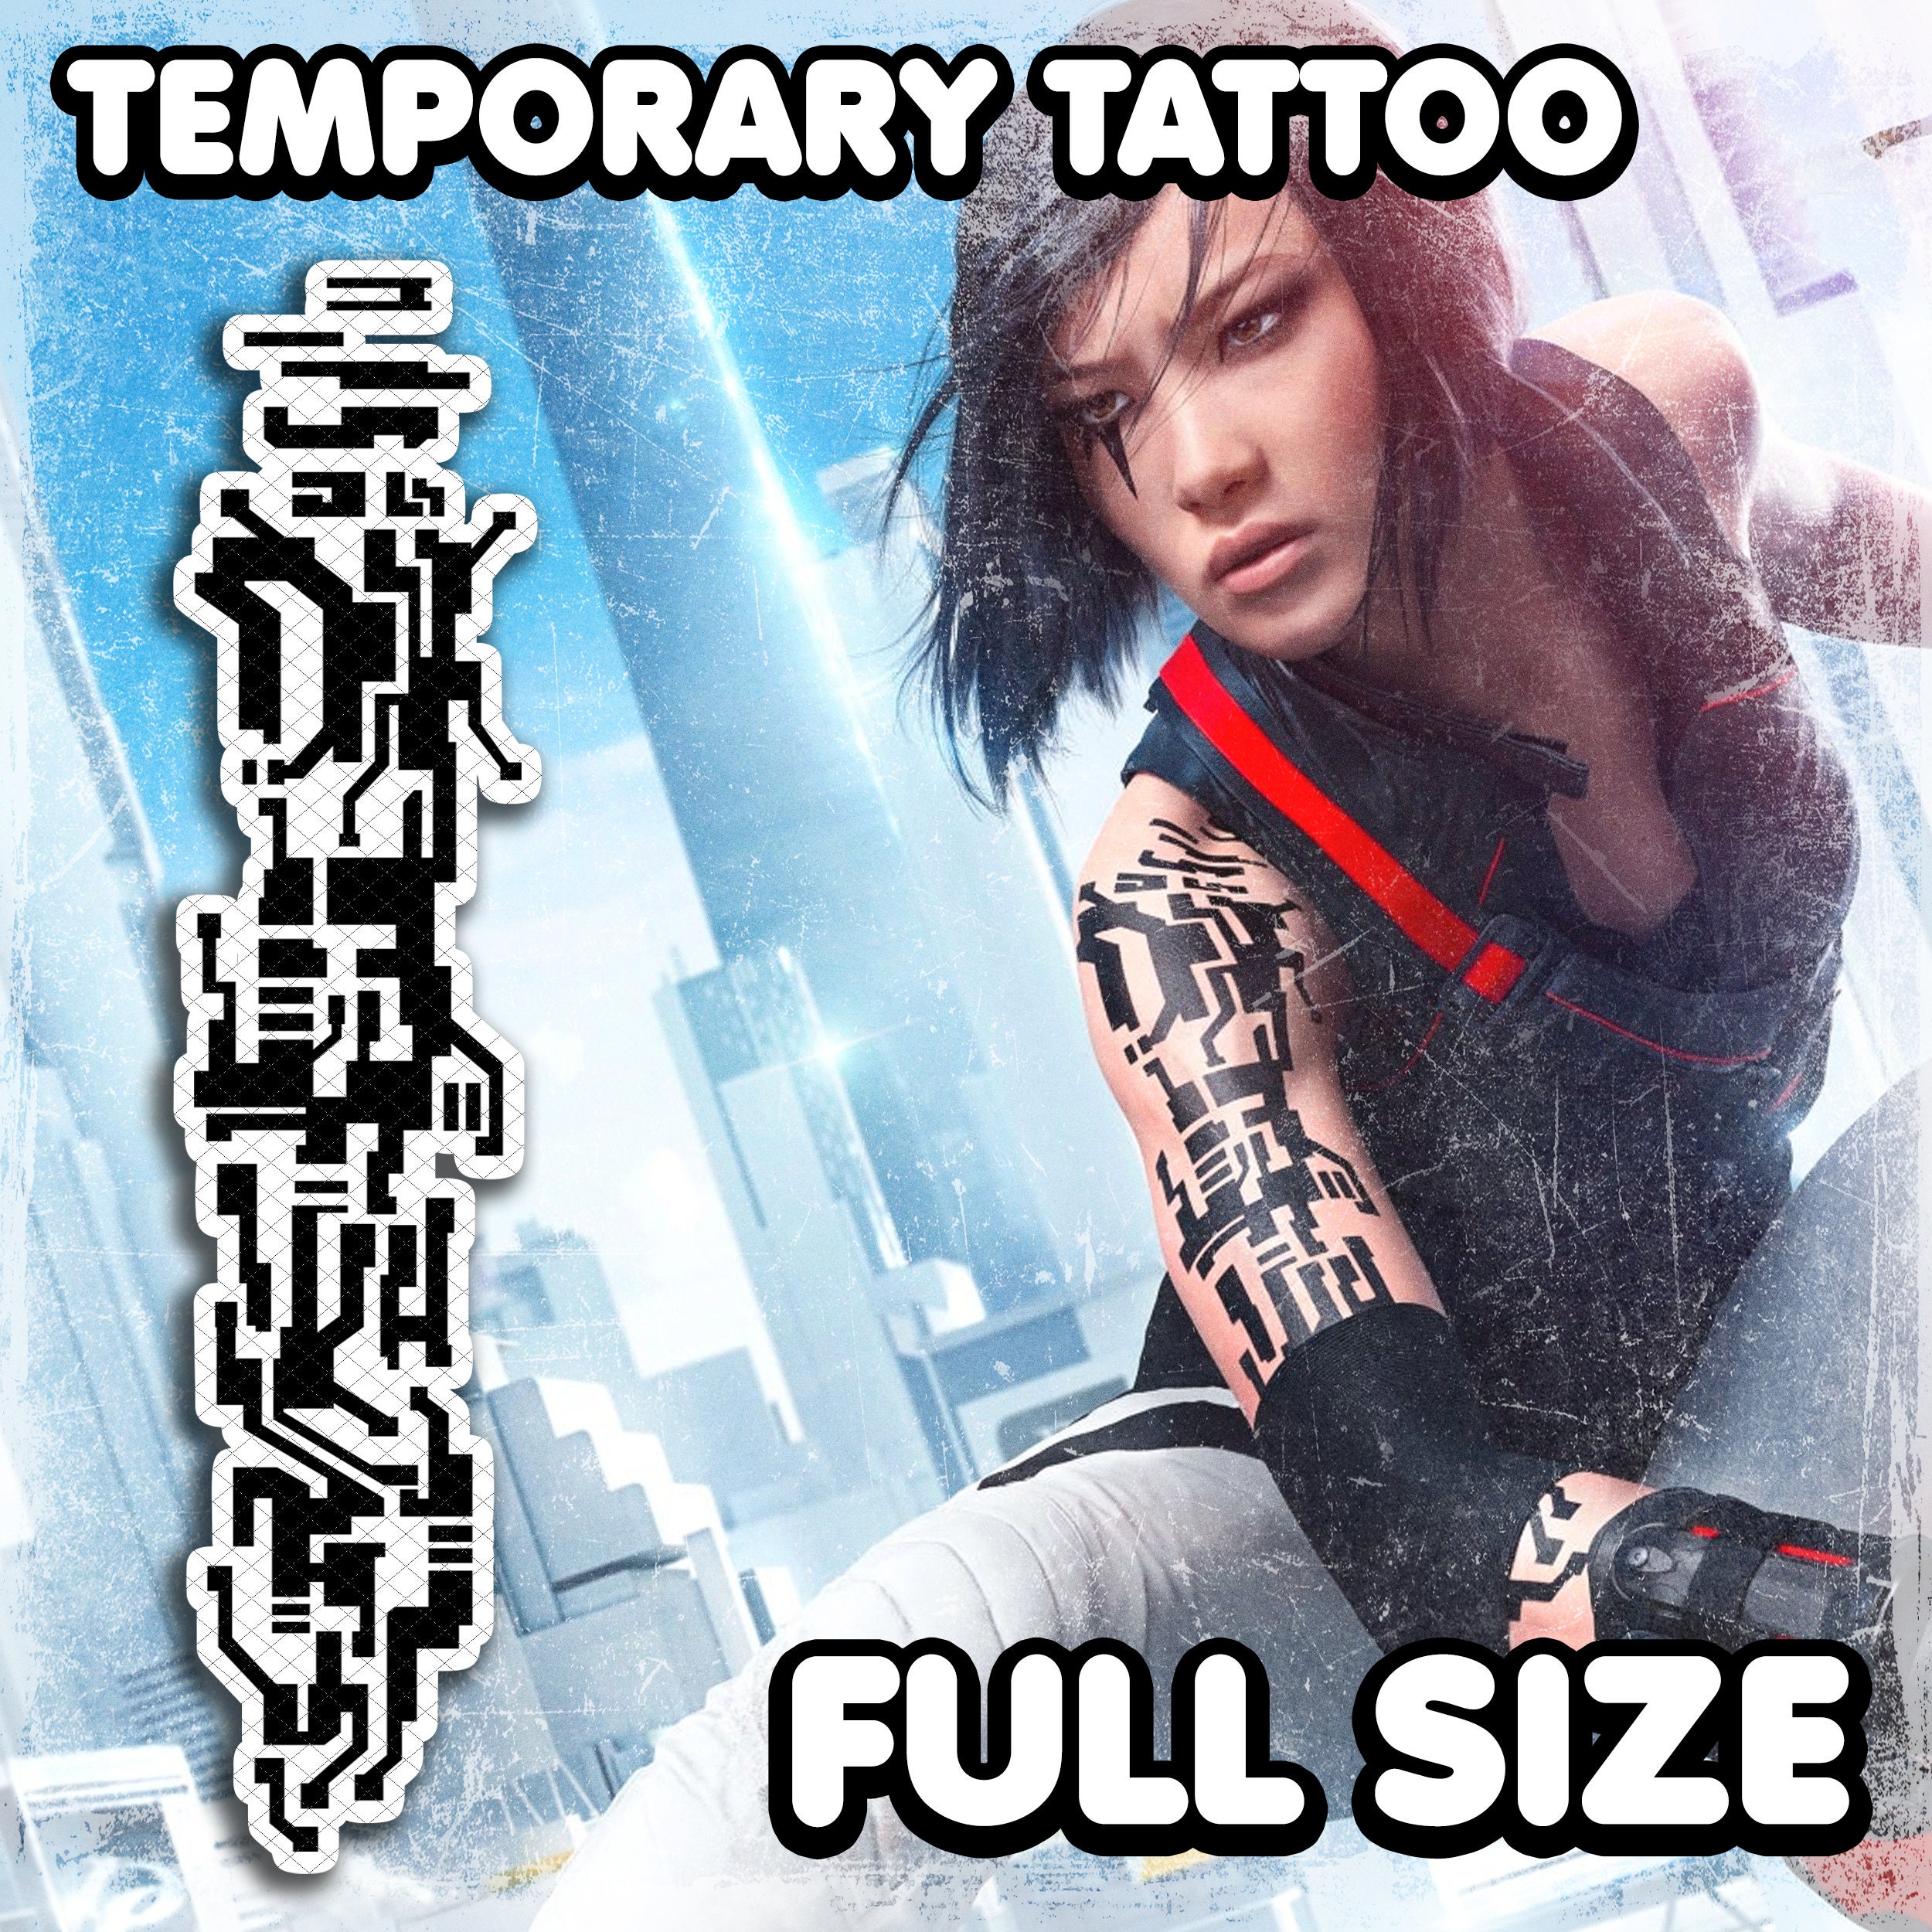 Mirror's Edge — Faith's Tattoo  Mirrors edge tattoo, Cyberpunk